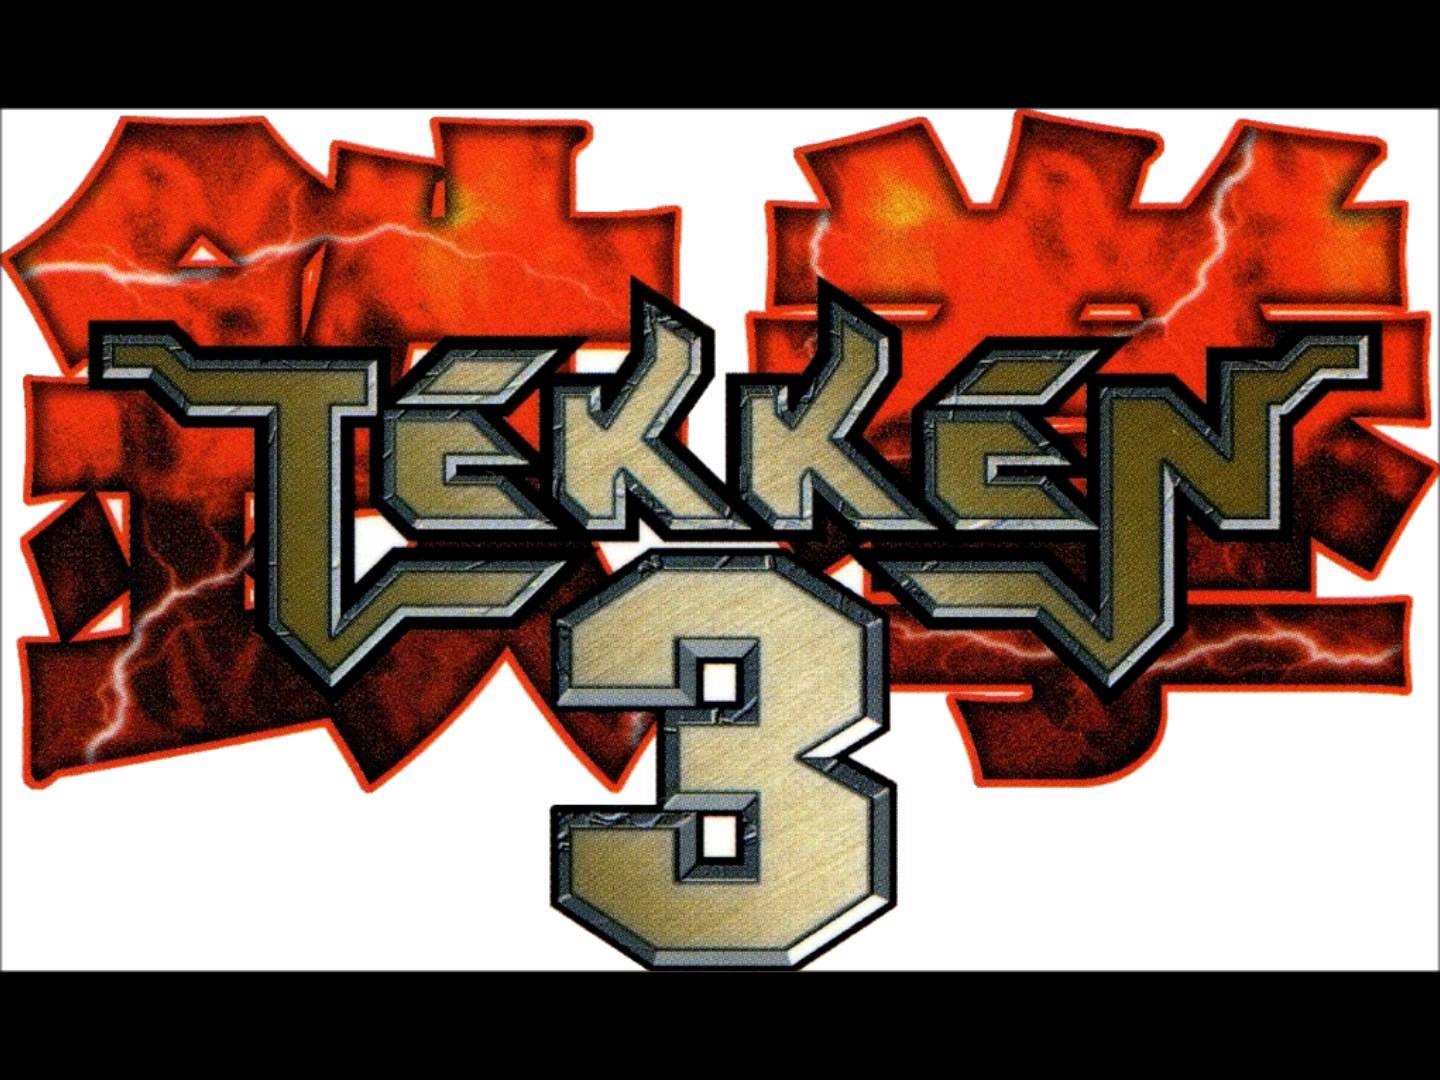 Tekken 3 Backgrounds, Compatible - PC, Mobile, Gadgets| 1440x1080 px